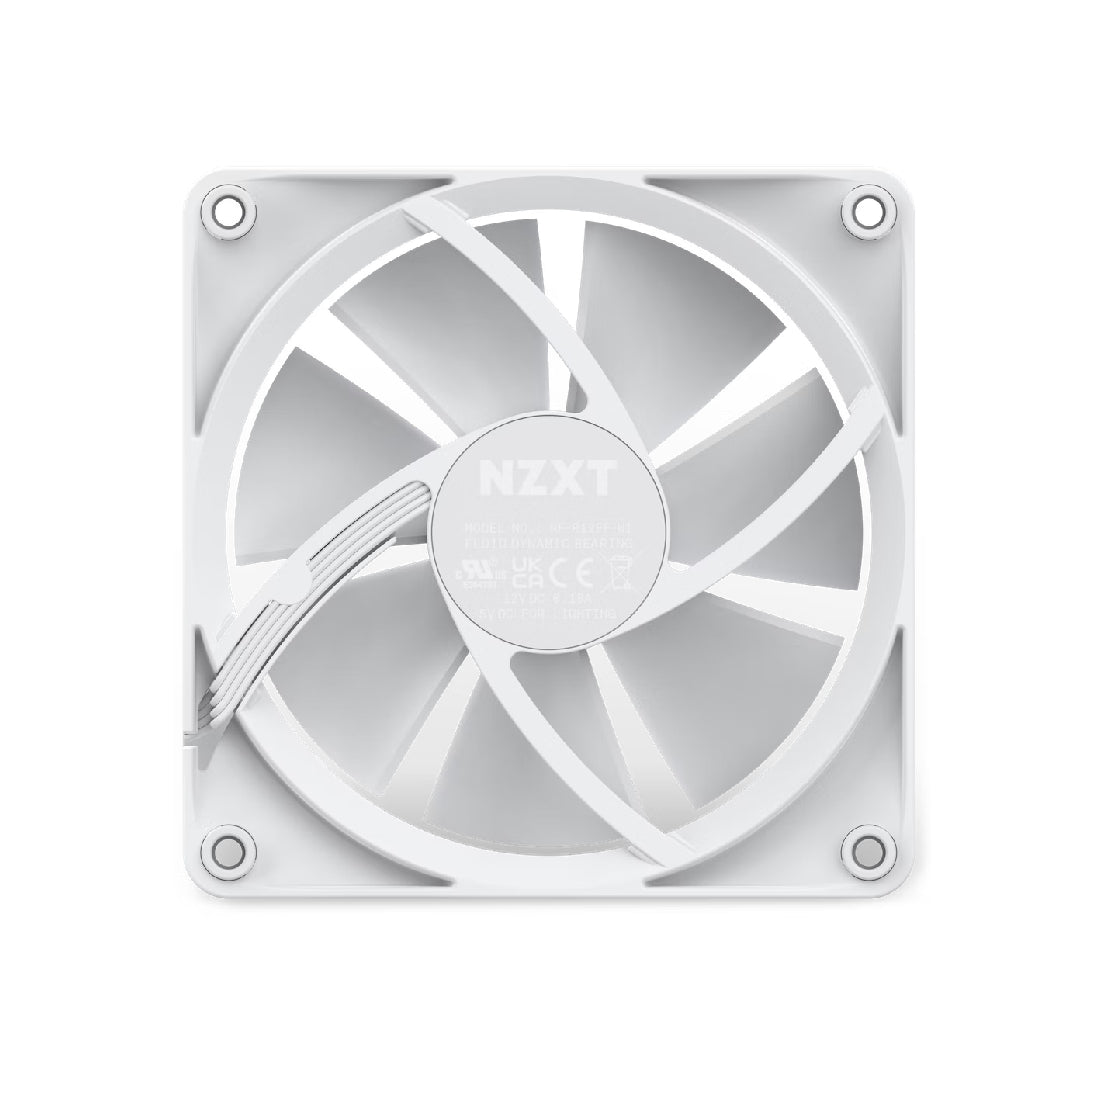 NZXT F120 120mm RGB Single Fan - White - مروحة تبريد - Store 974 | ستور ٩٧٤